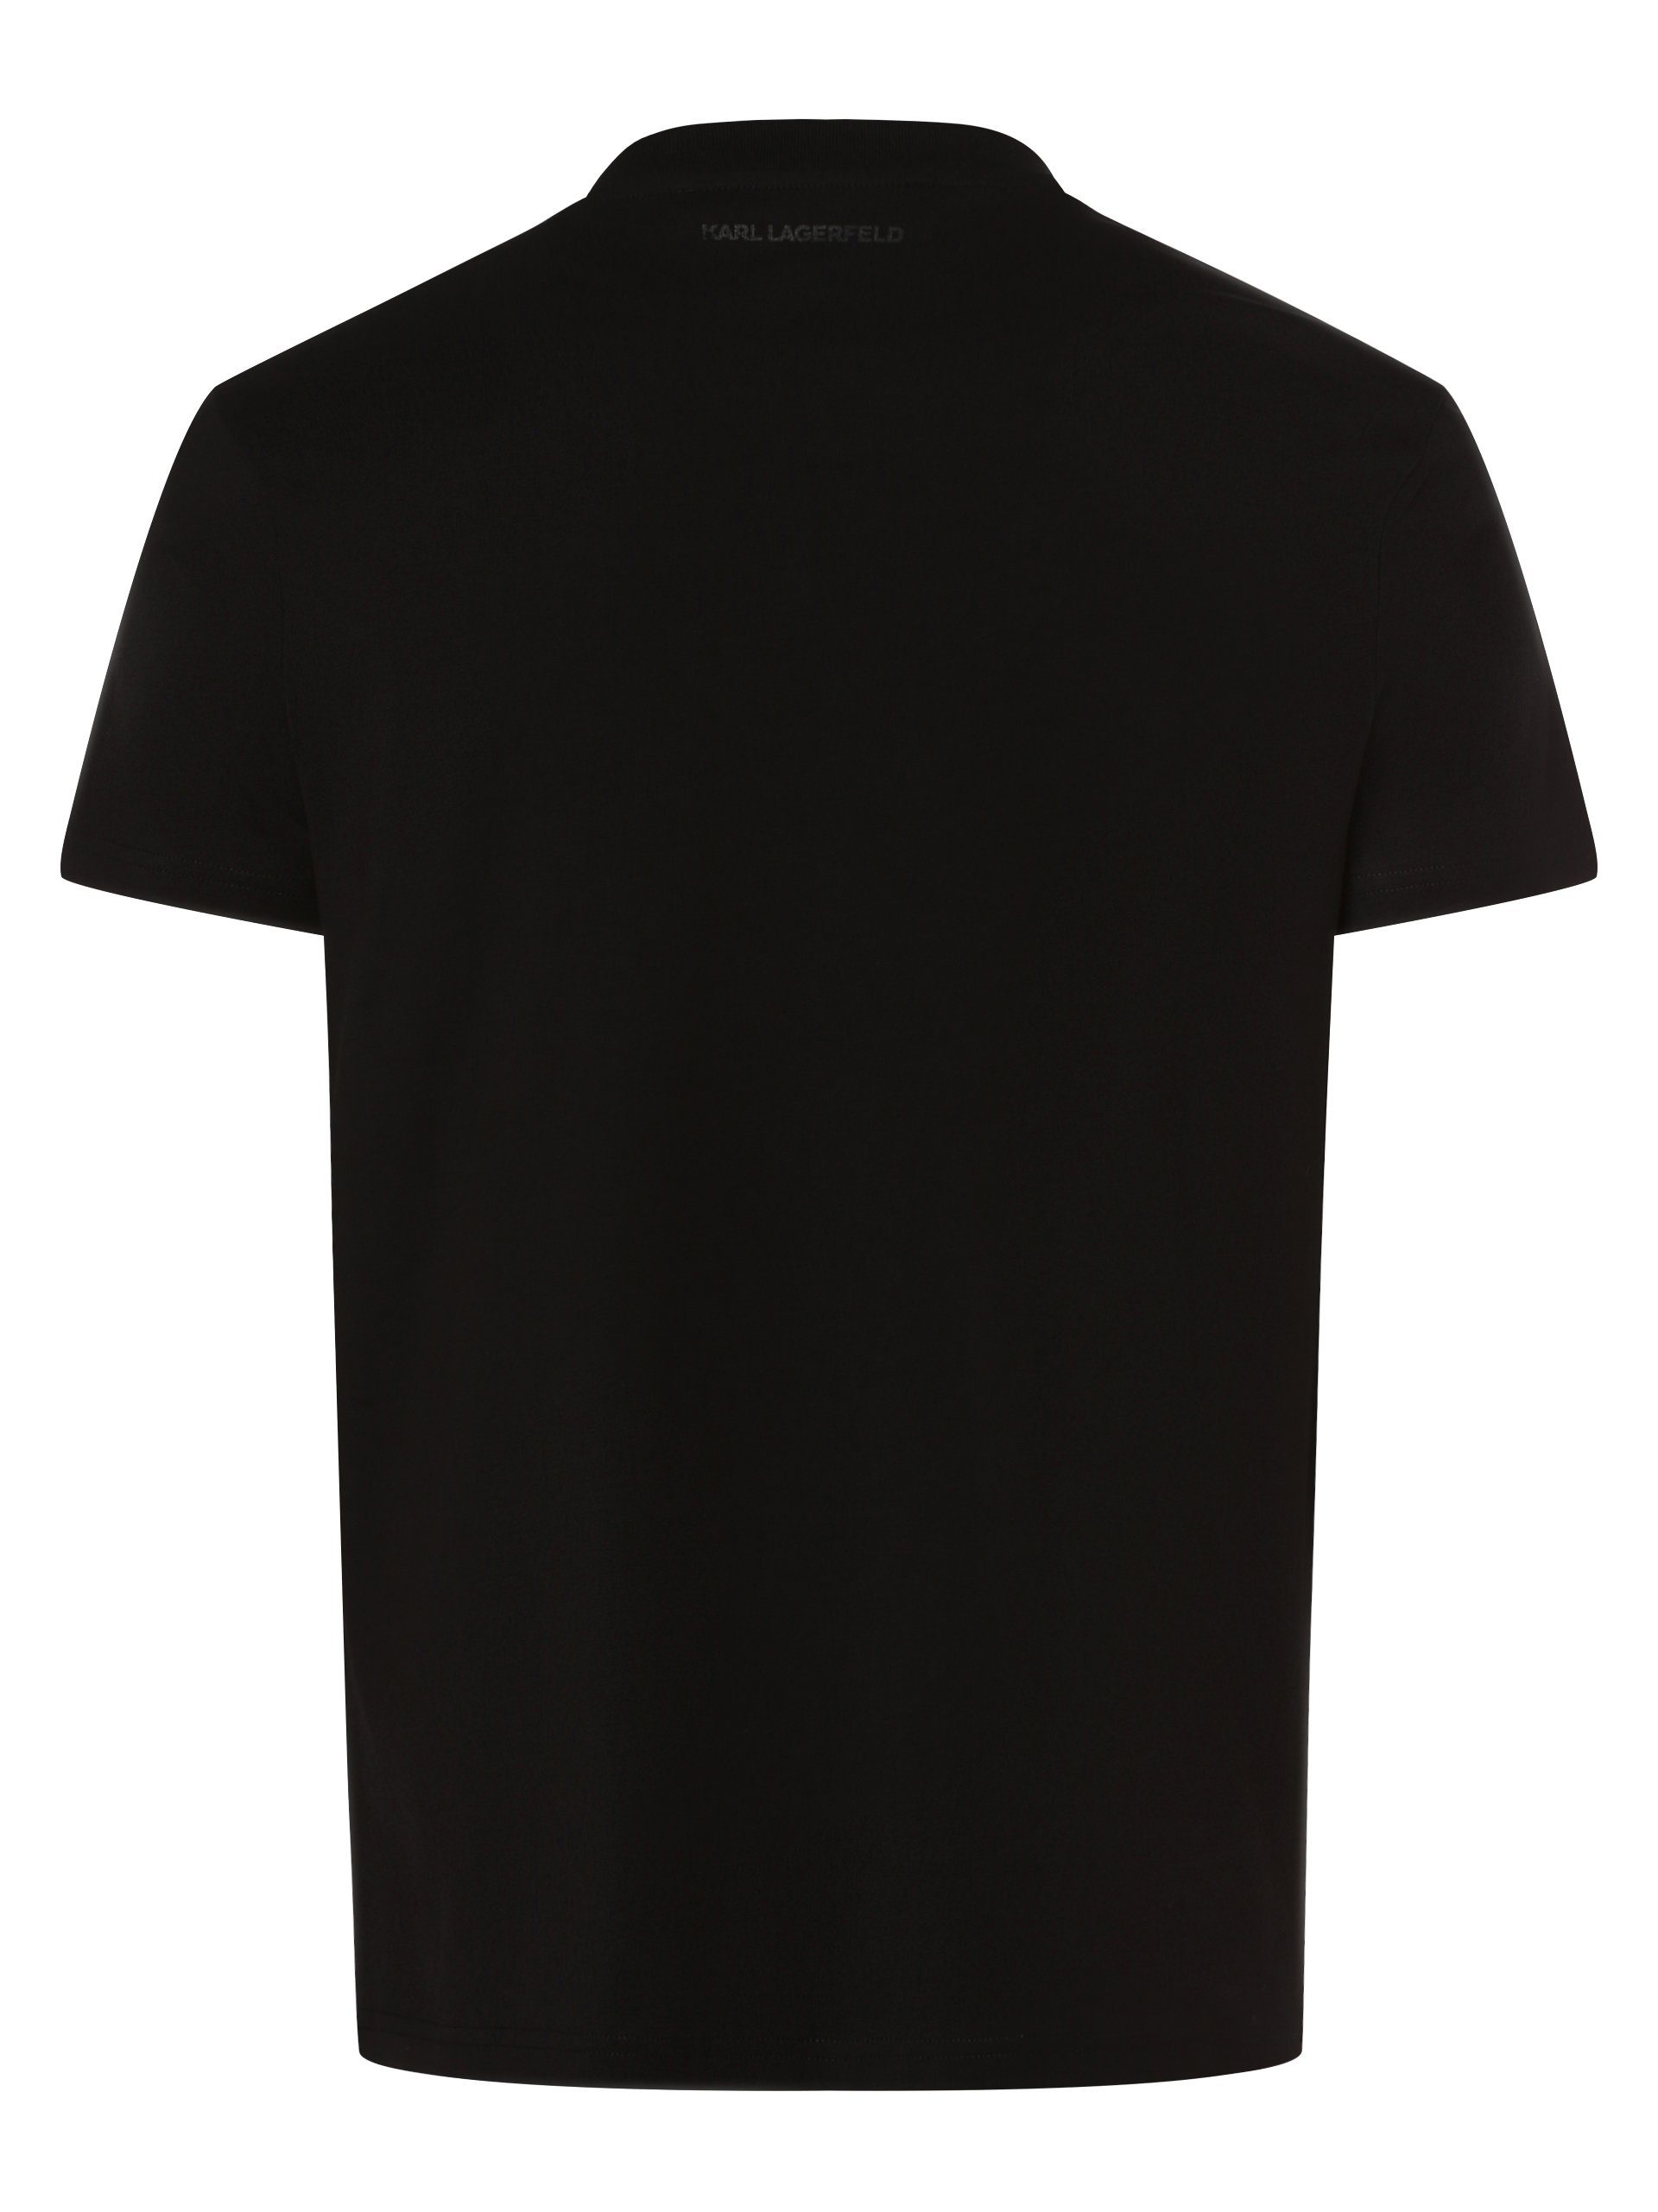 KARL schwarz T-Shirt LAGERFELD silber